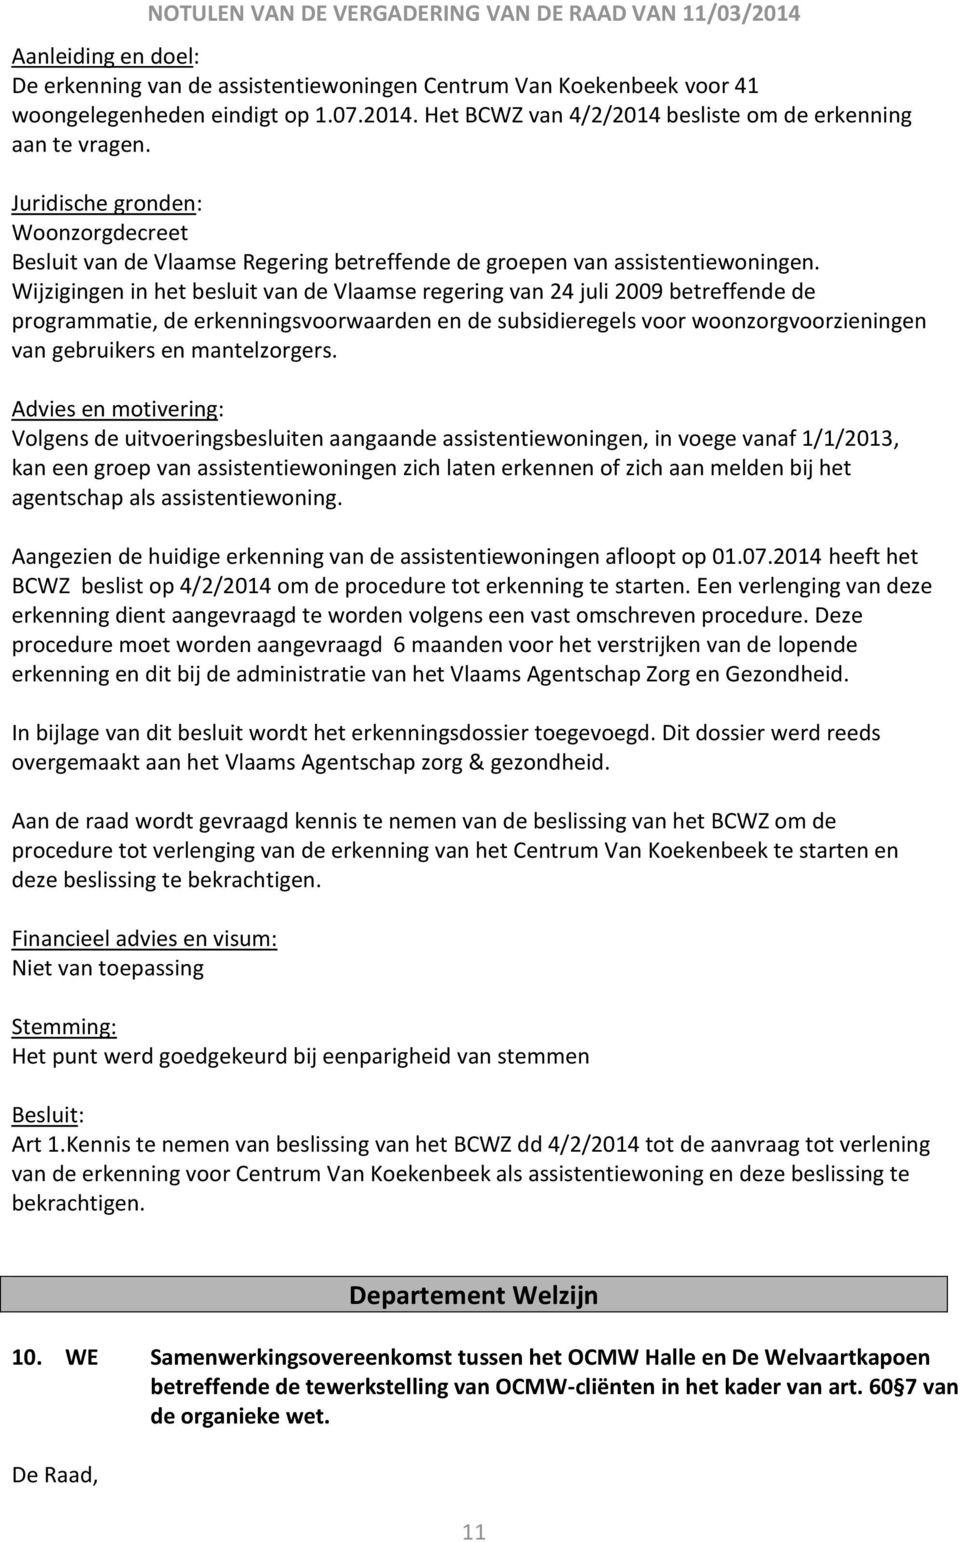 Wijzigingen in het besluit van de Vlaamse regering van 24 juli 2009 betreffende de programmatie, de erkenningsvoorwaarden en de subsidieregels voor woonzorgvoorzieningen van gebruikers en